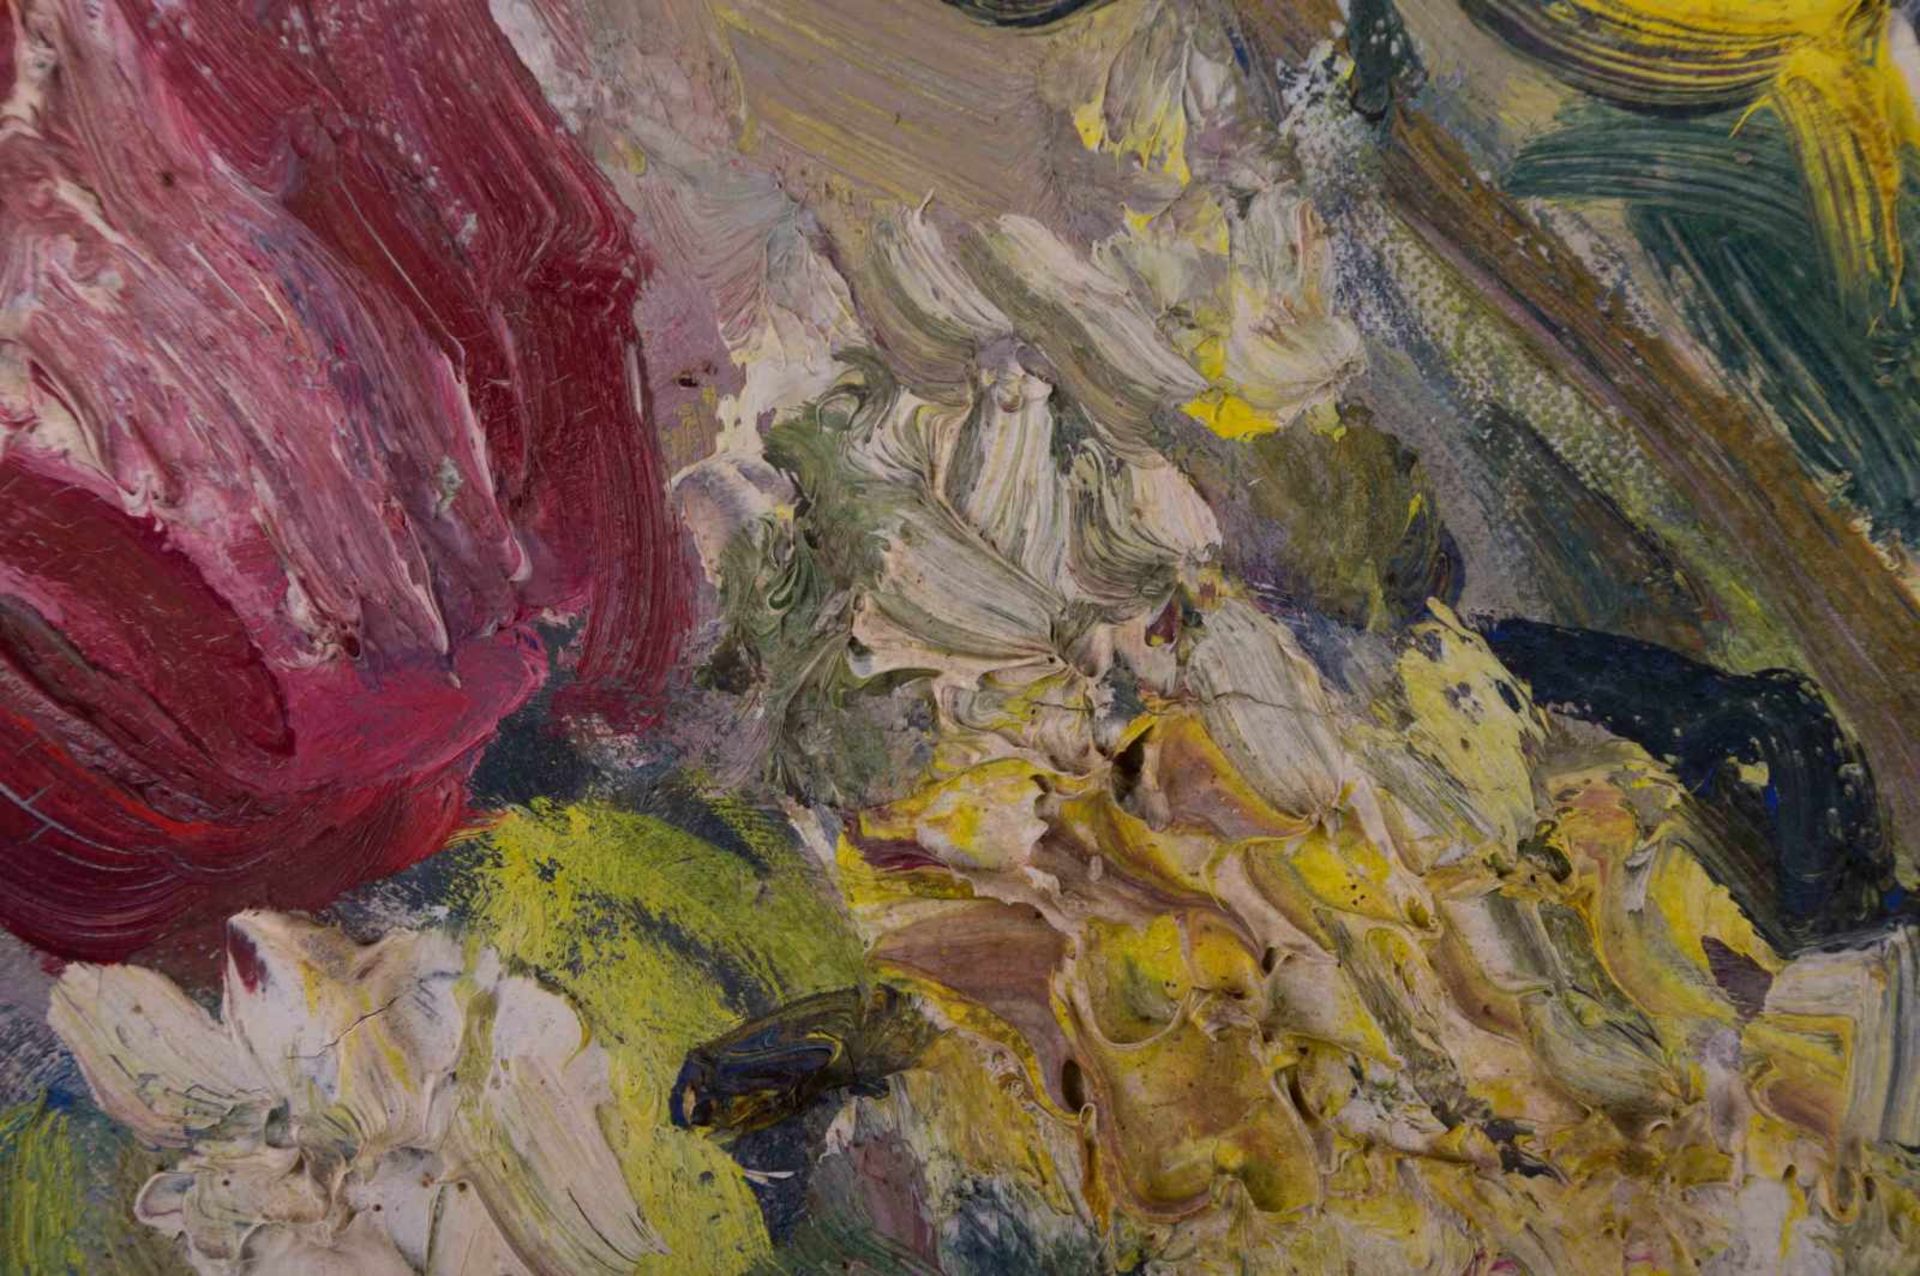 Ernst HASSEBRAUK (1905-1974) "Stillleben mit Tulpen" Gemälde Öl/Leinwand, 46,5 cm x 55 cm, rechts - Bild 4 aus 8